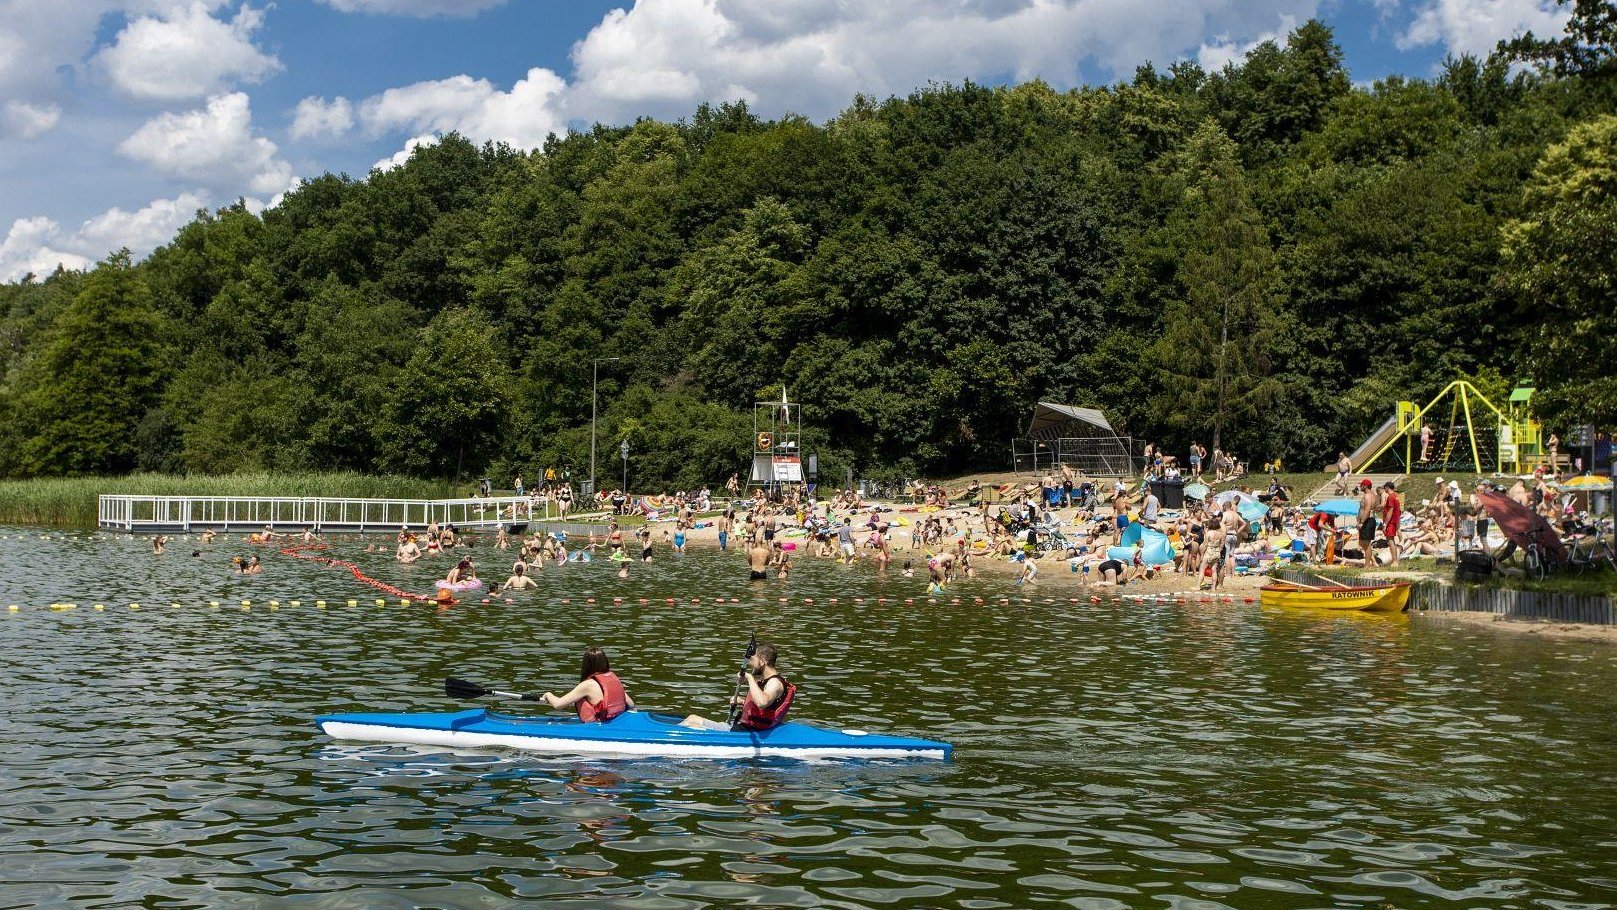 Zdjęcie przedstawia ludzi w kajaku na wodzie i tłum ludzi na plaży.